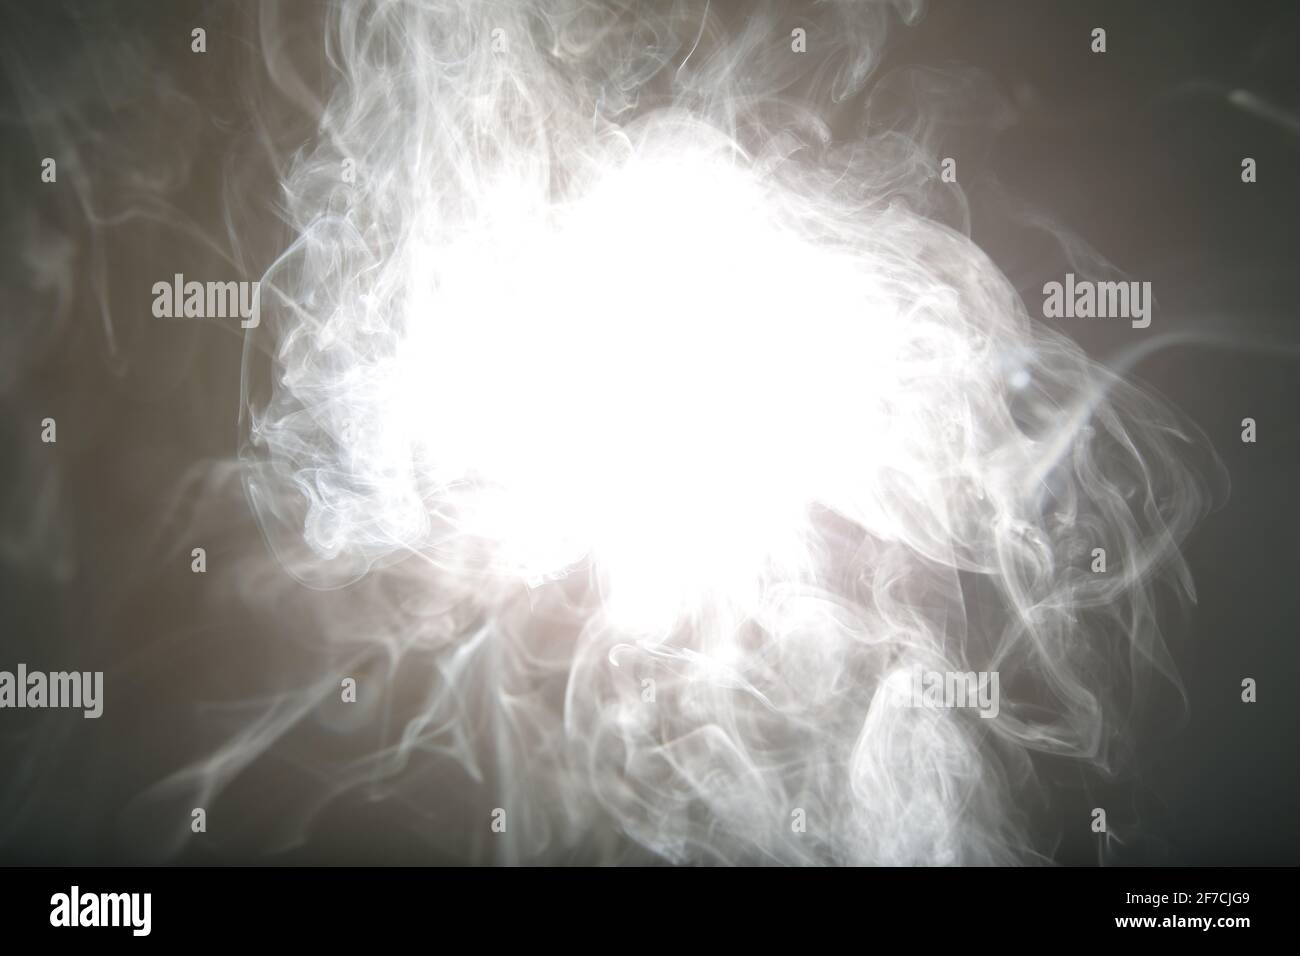 Das helle weiße Licht der Lampe leuchtet weißen Rauch auf Im Dunkeln  Stockfotografie - Alamy